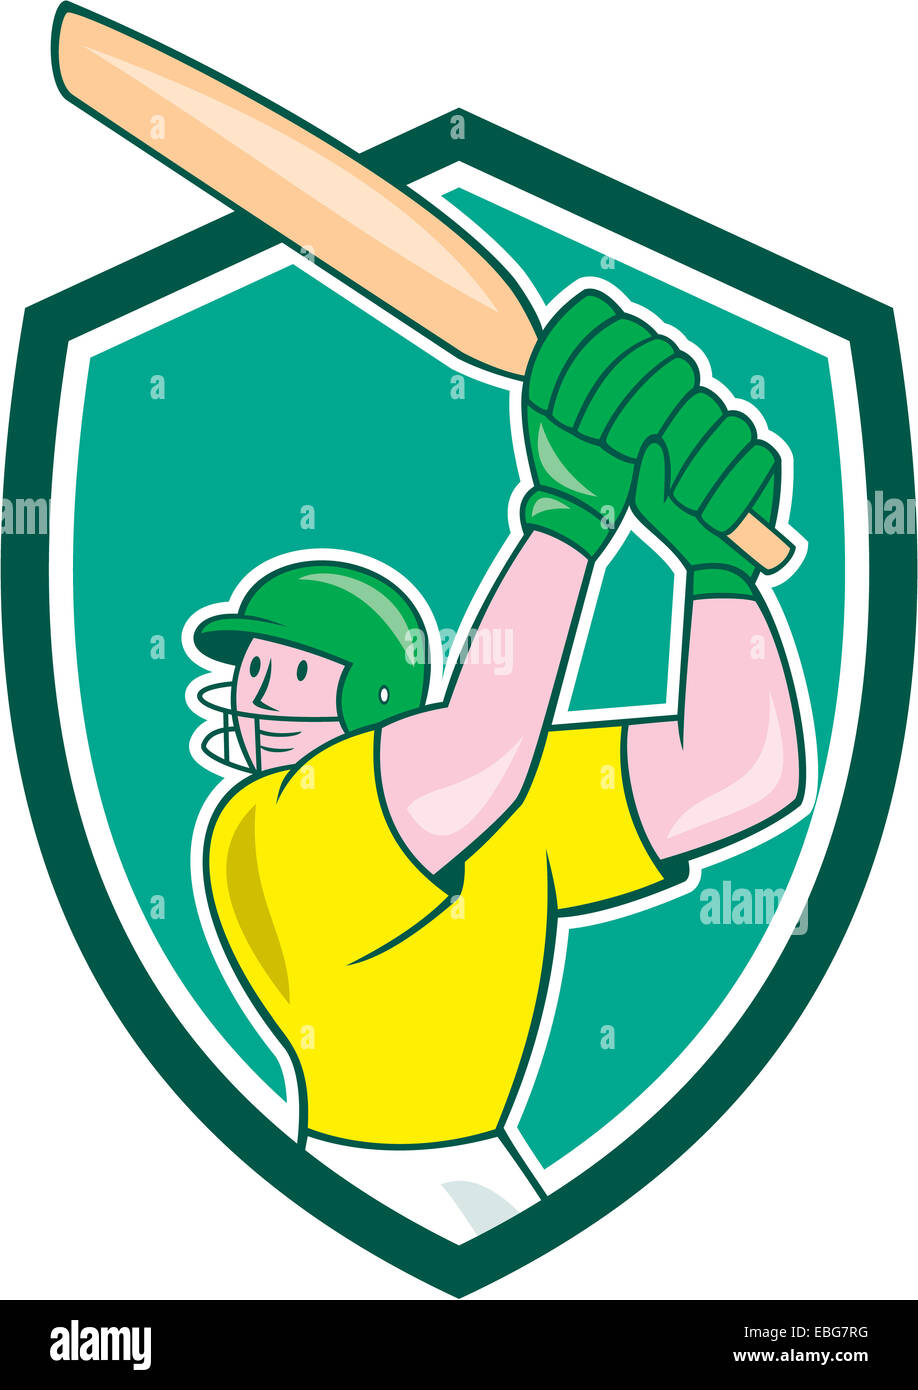 Illustration Of A Cricket Player Batsman With Bat Batting Set Inside